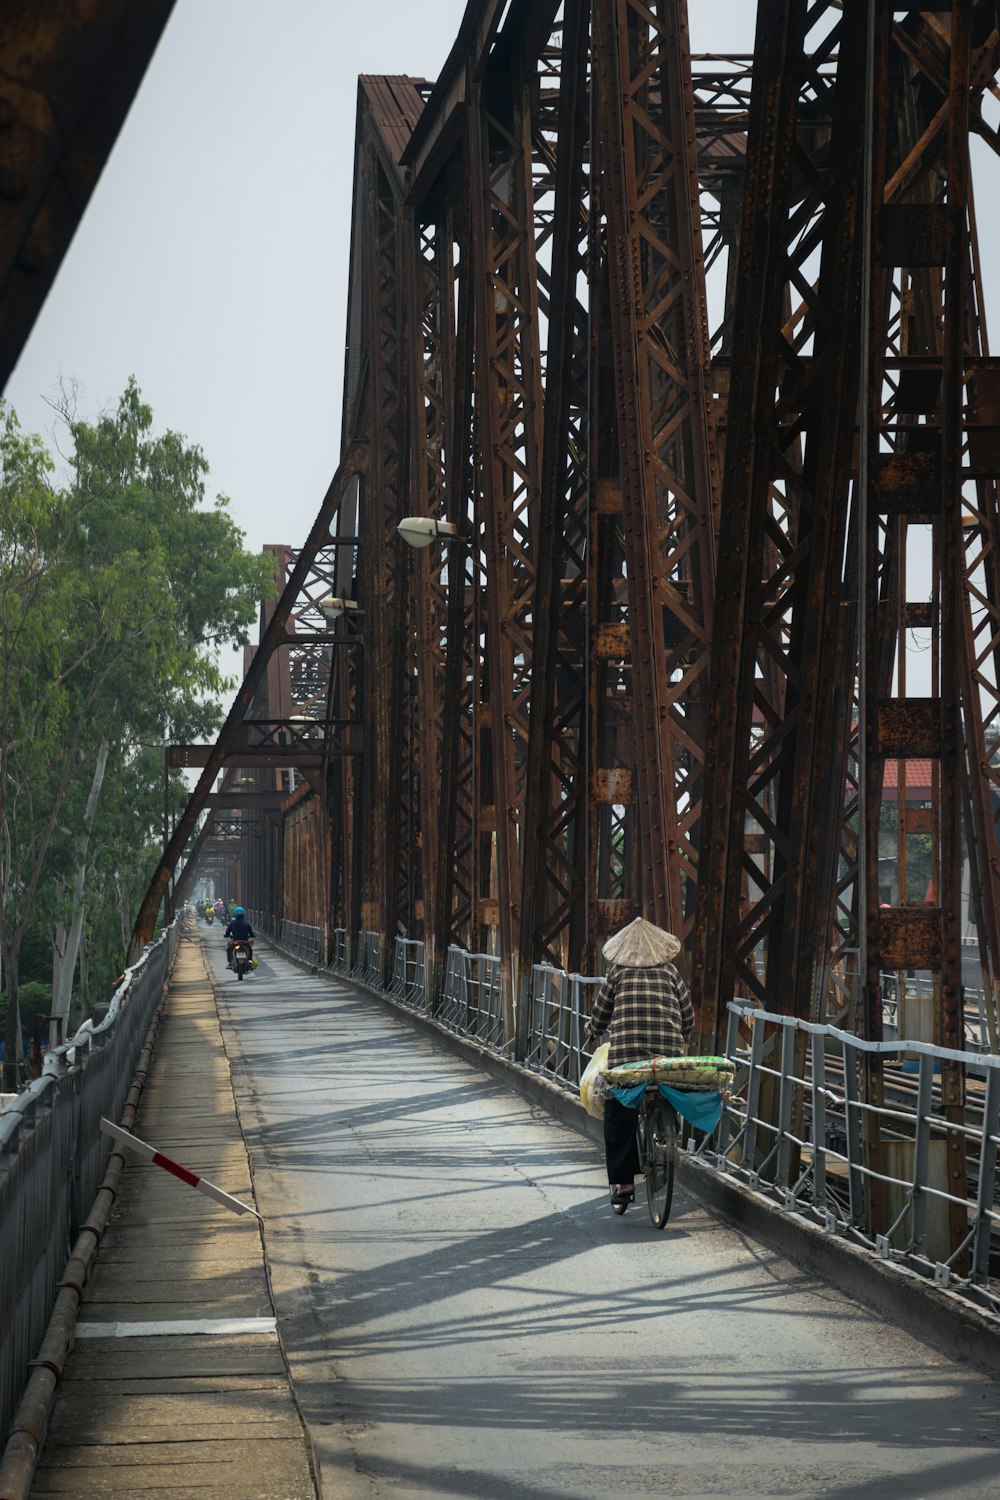 a person with an umbrella walking across a bridge